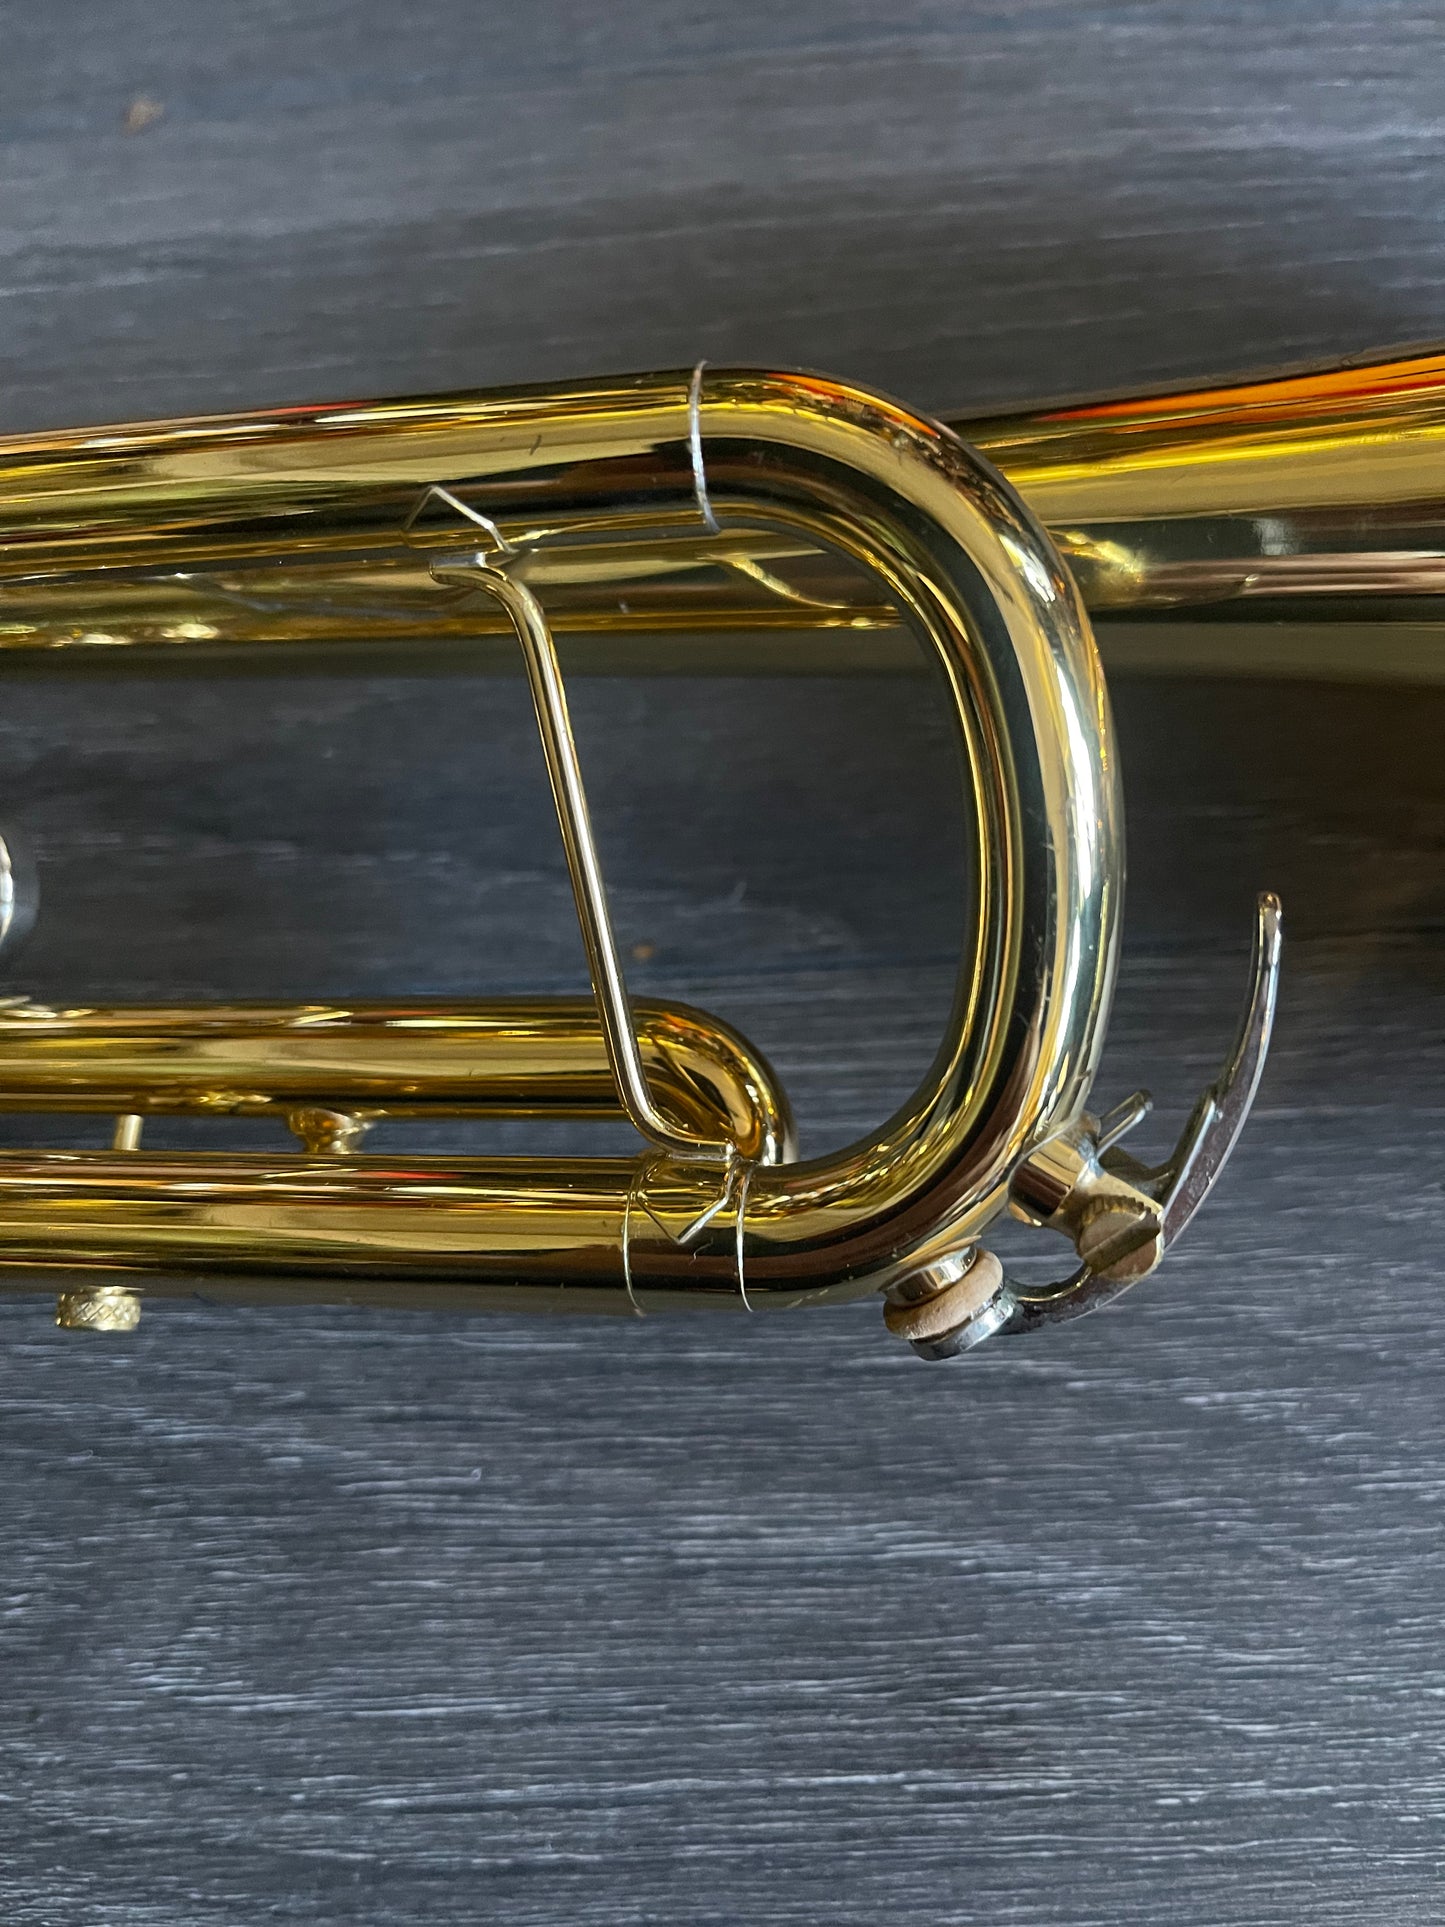 Yamaha Eric Miroshima Bb Trumpet #C77204